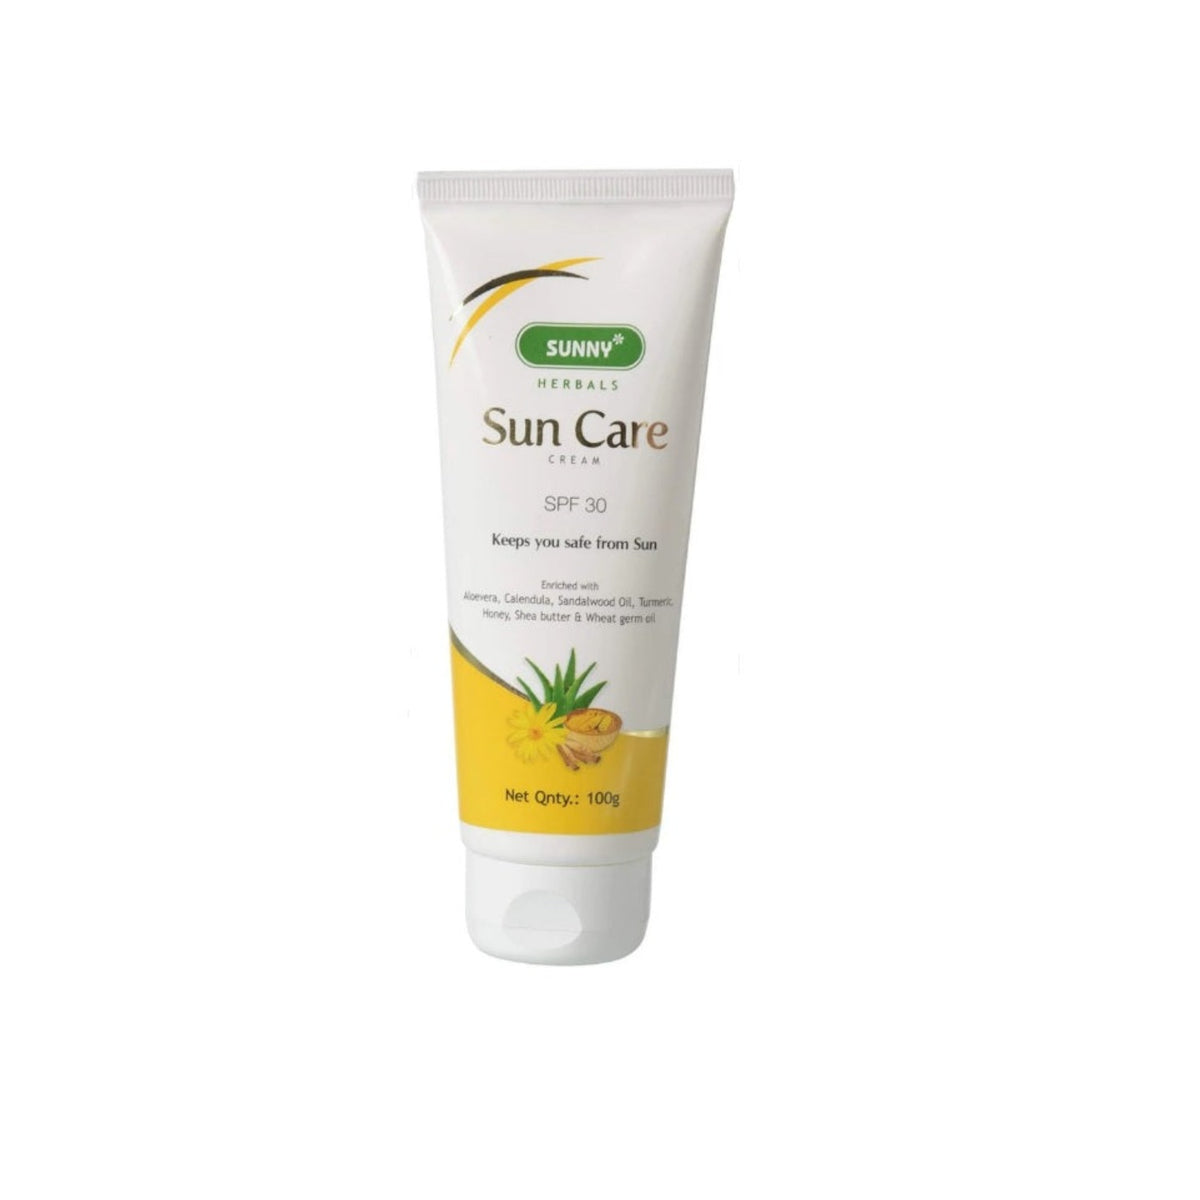 Bakson's Sunny Herbals Sun Care SPF 30, schützt die Haut vor der Sonne, Hautpflegecreme, 100 g